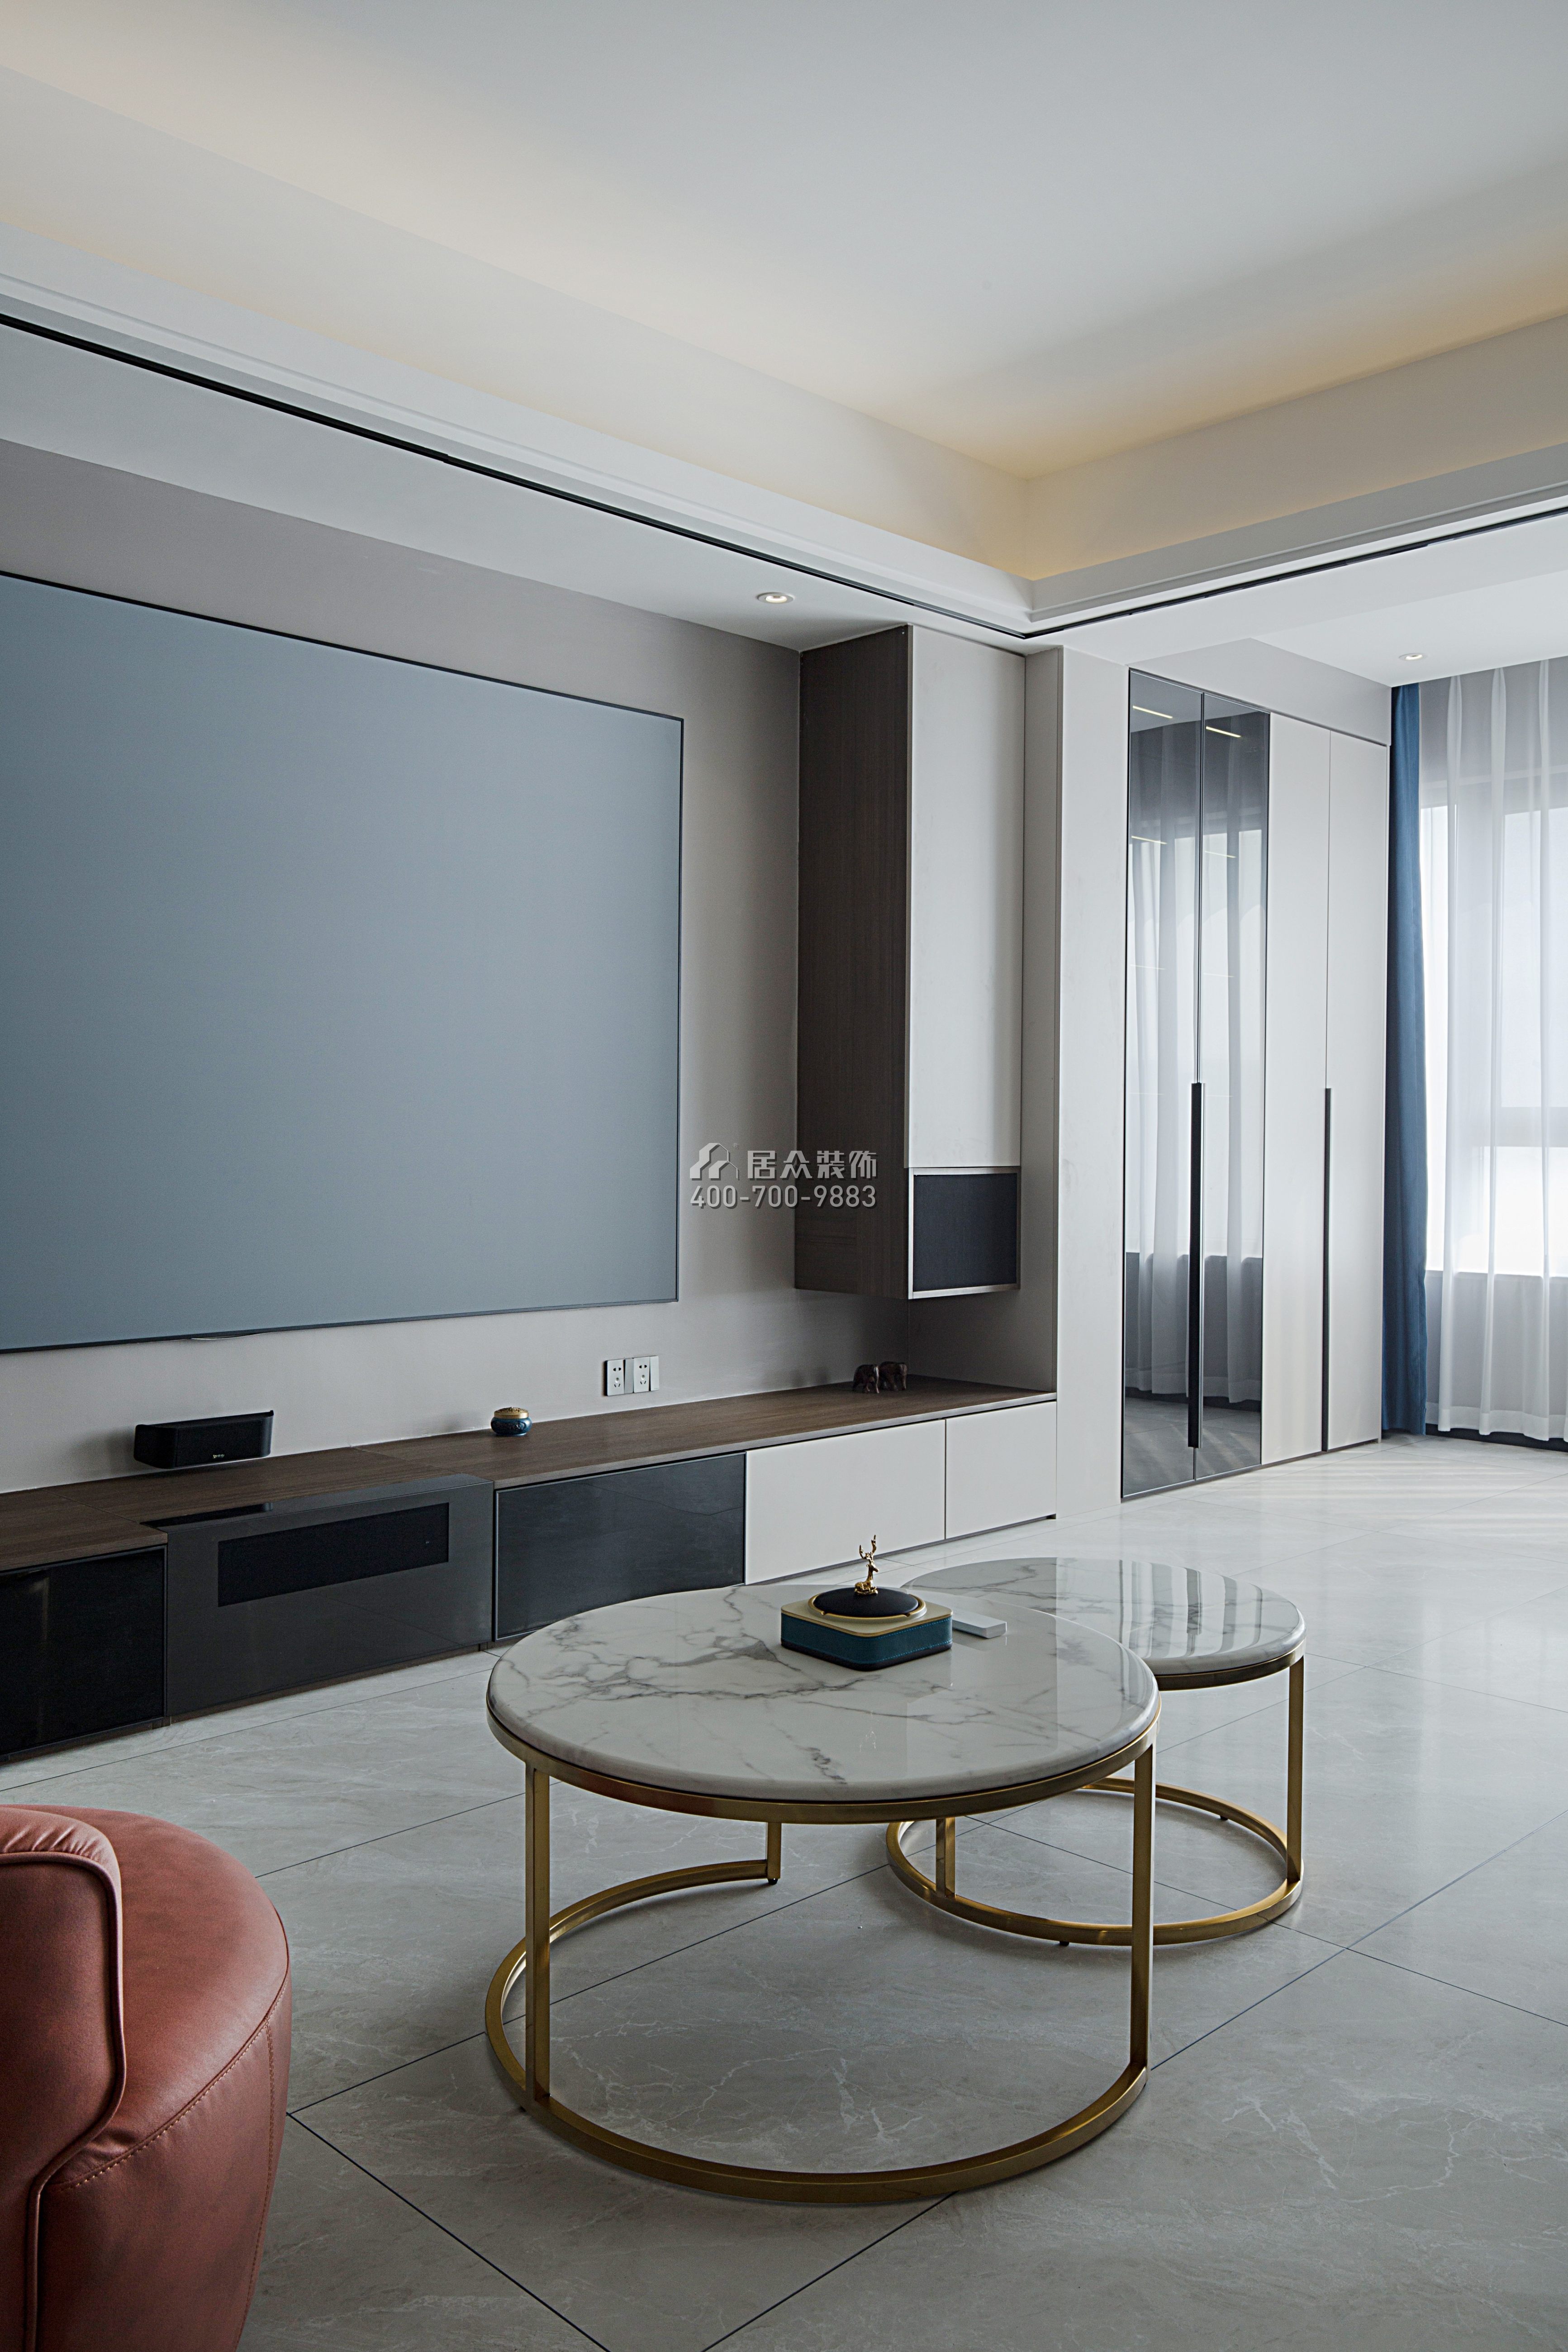 金水灣150平方米現代簡約風格平層戶型客廳裝修效果圖